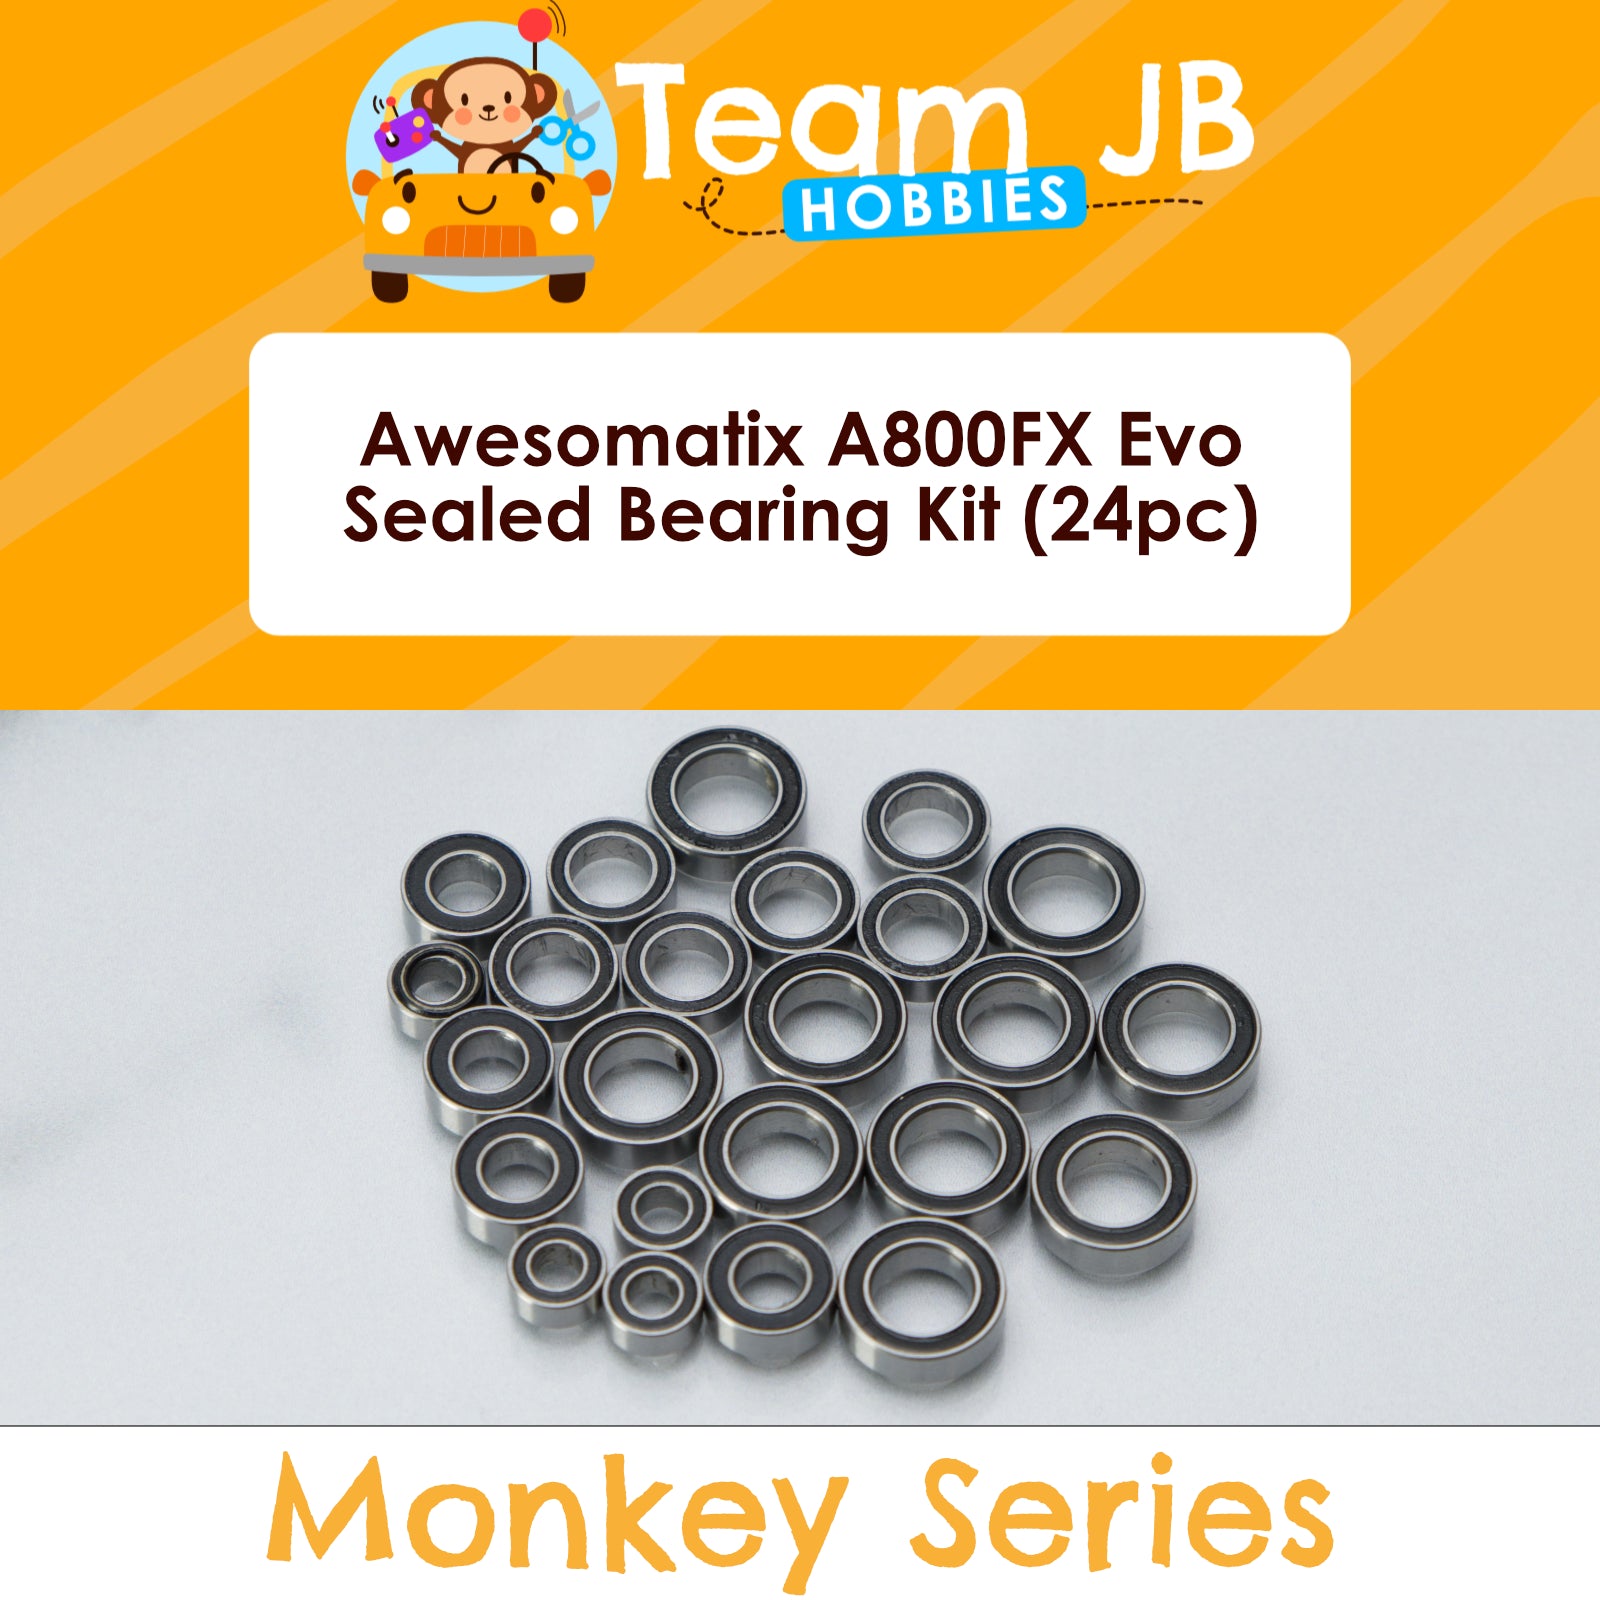 Awesomatix A800FX Evo - Sealed Bearing Kit